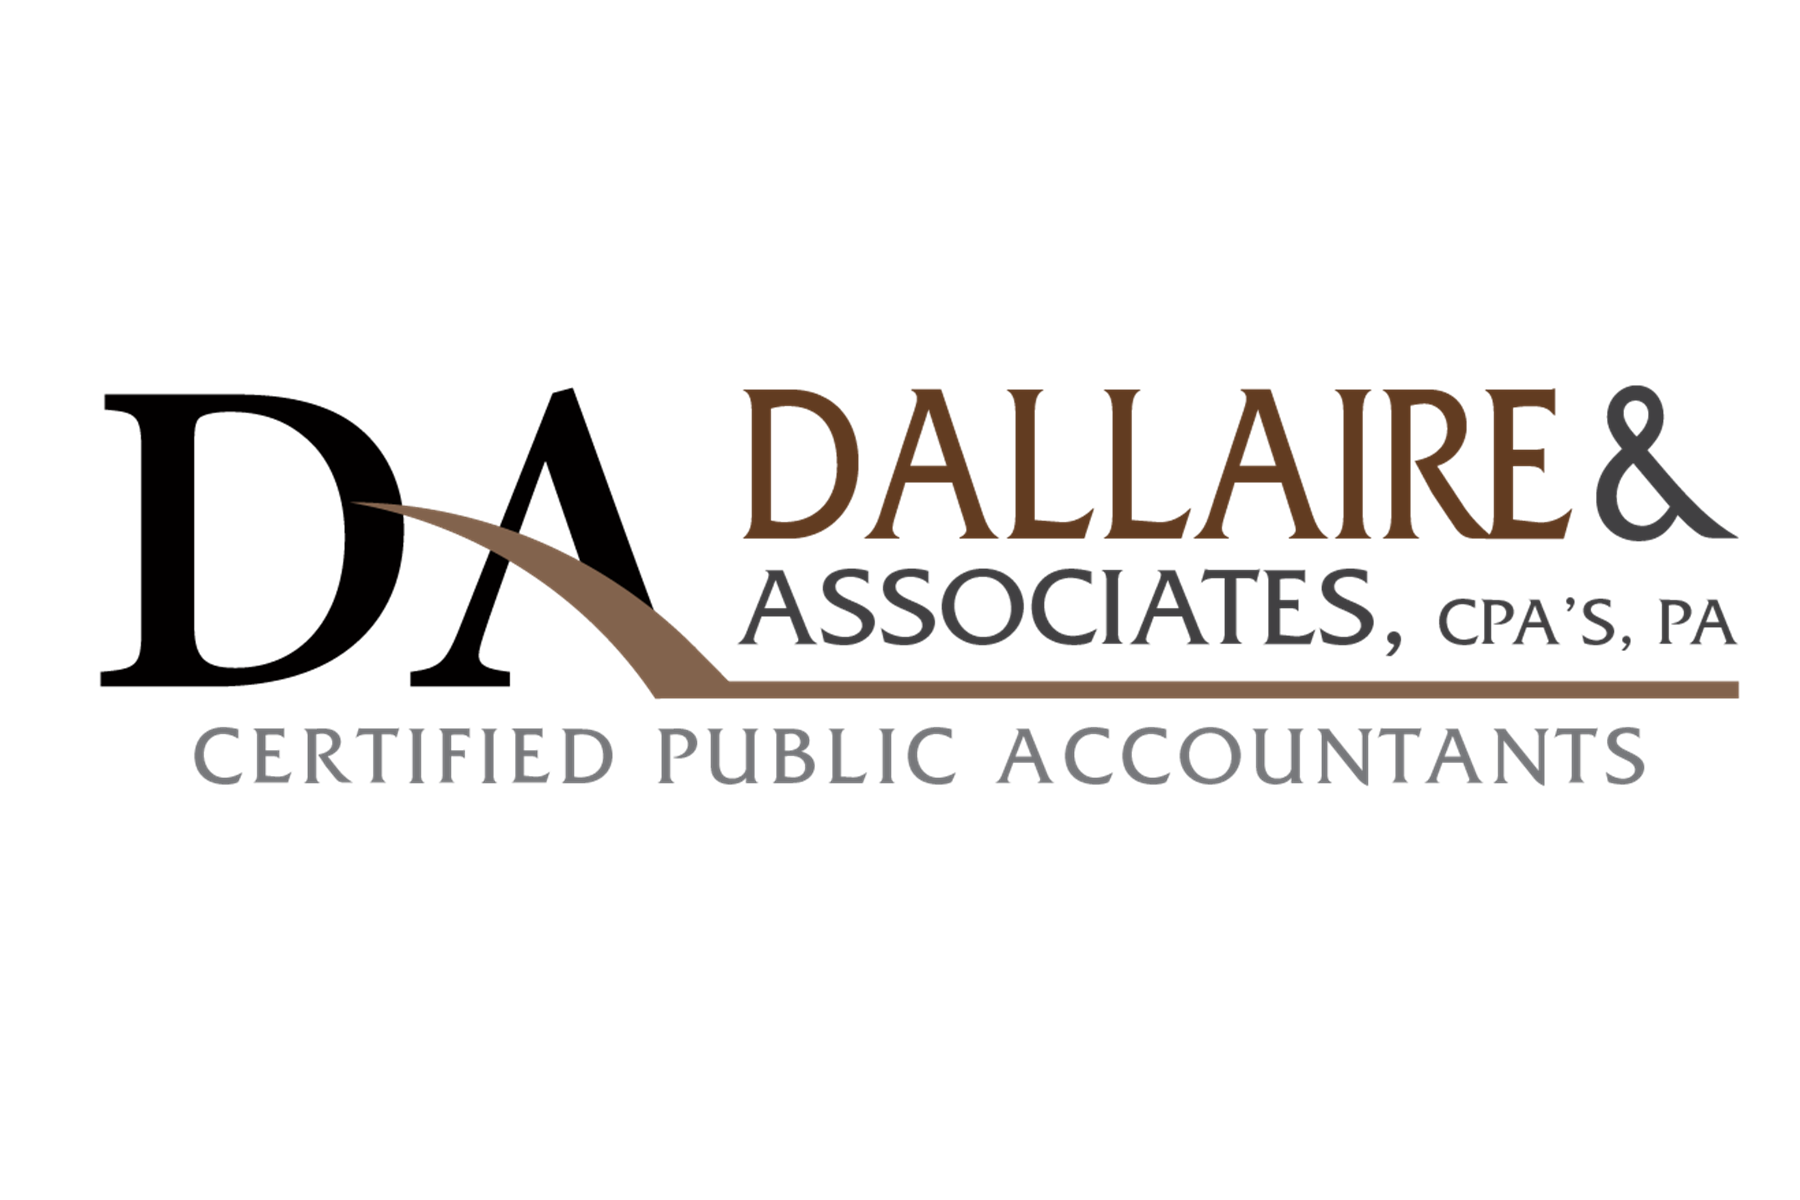 Dallaire & Associates, CPA’s, PA